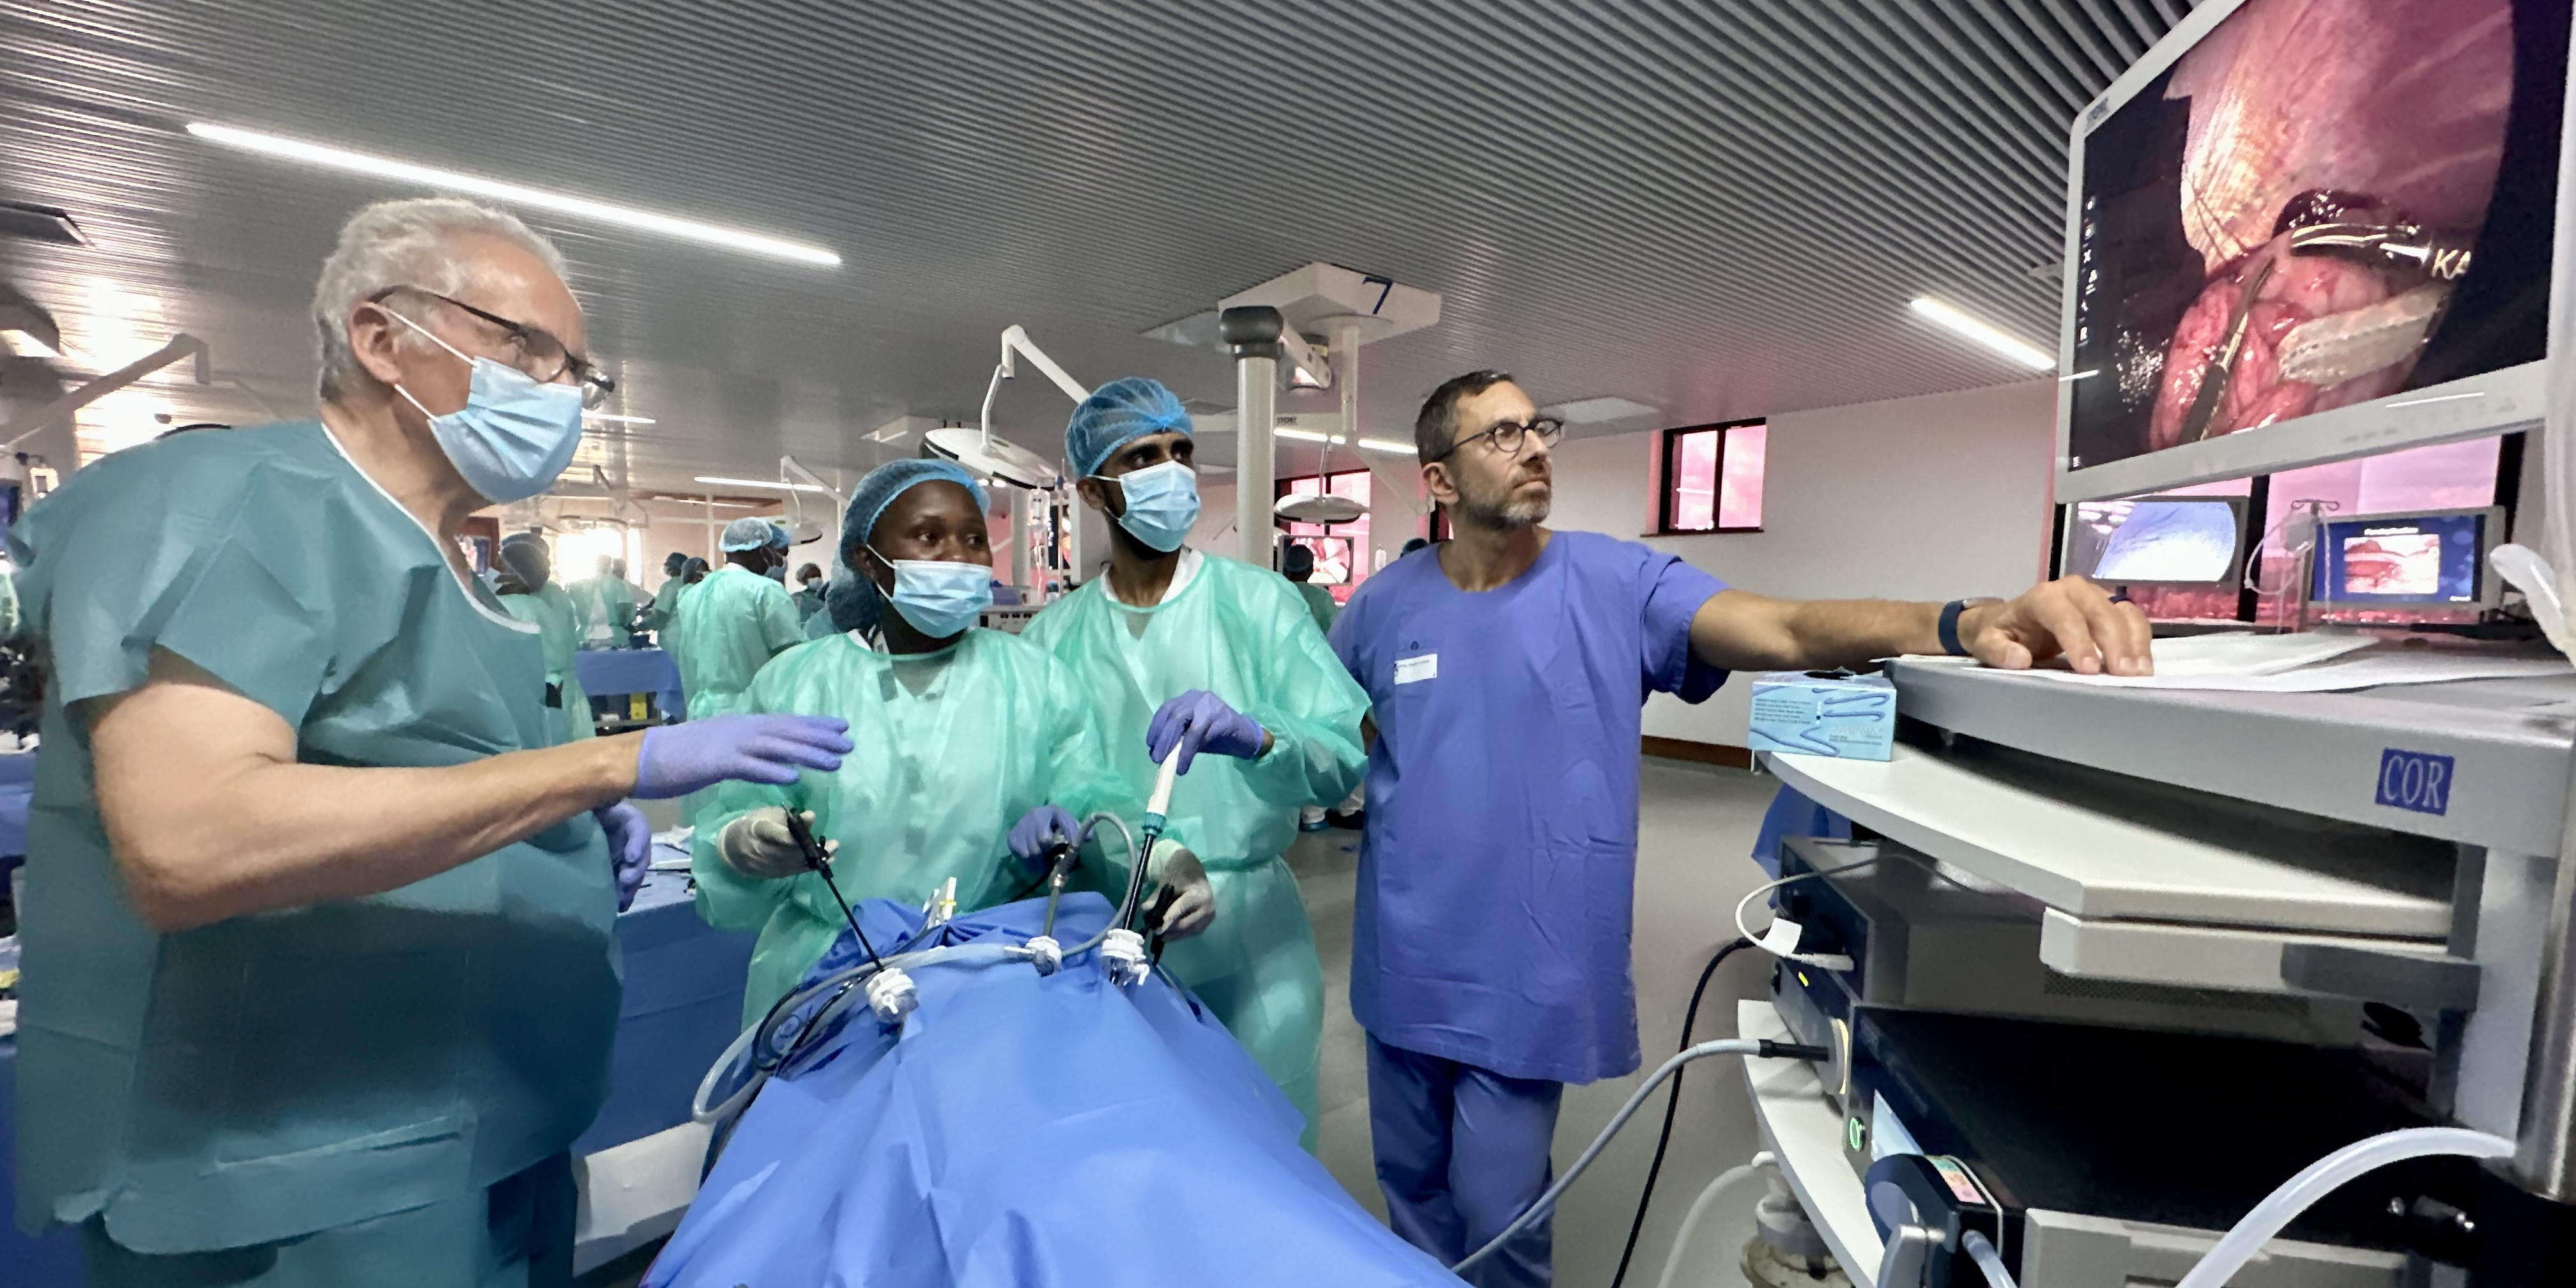 A Kigali, un campus médical relance la diplomatie franco-rwandaise